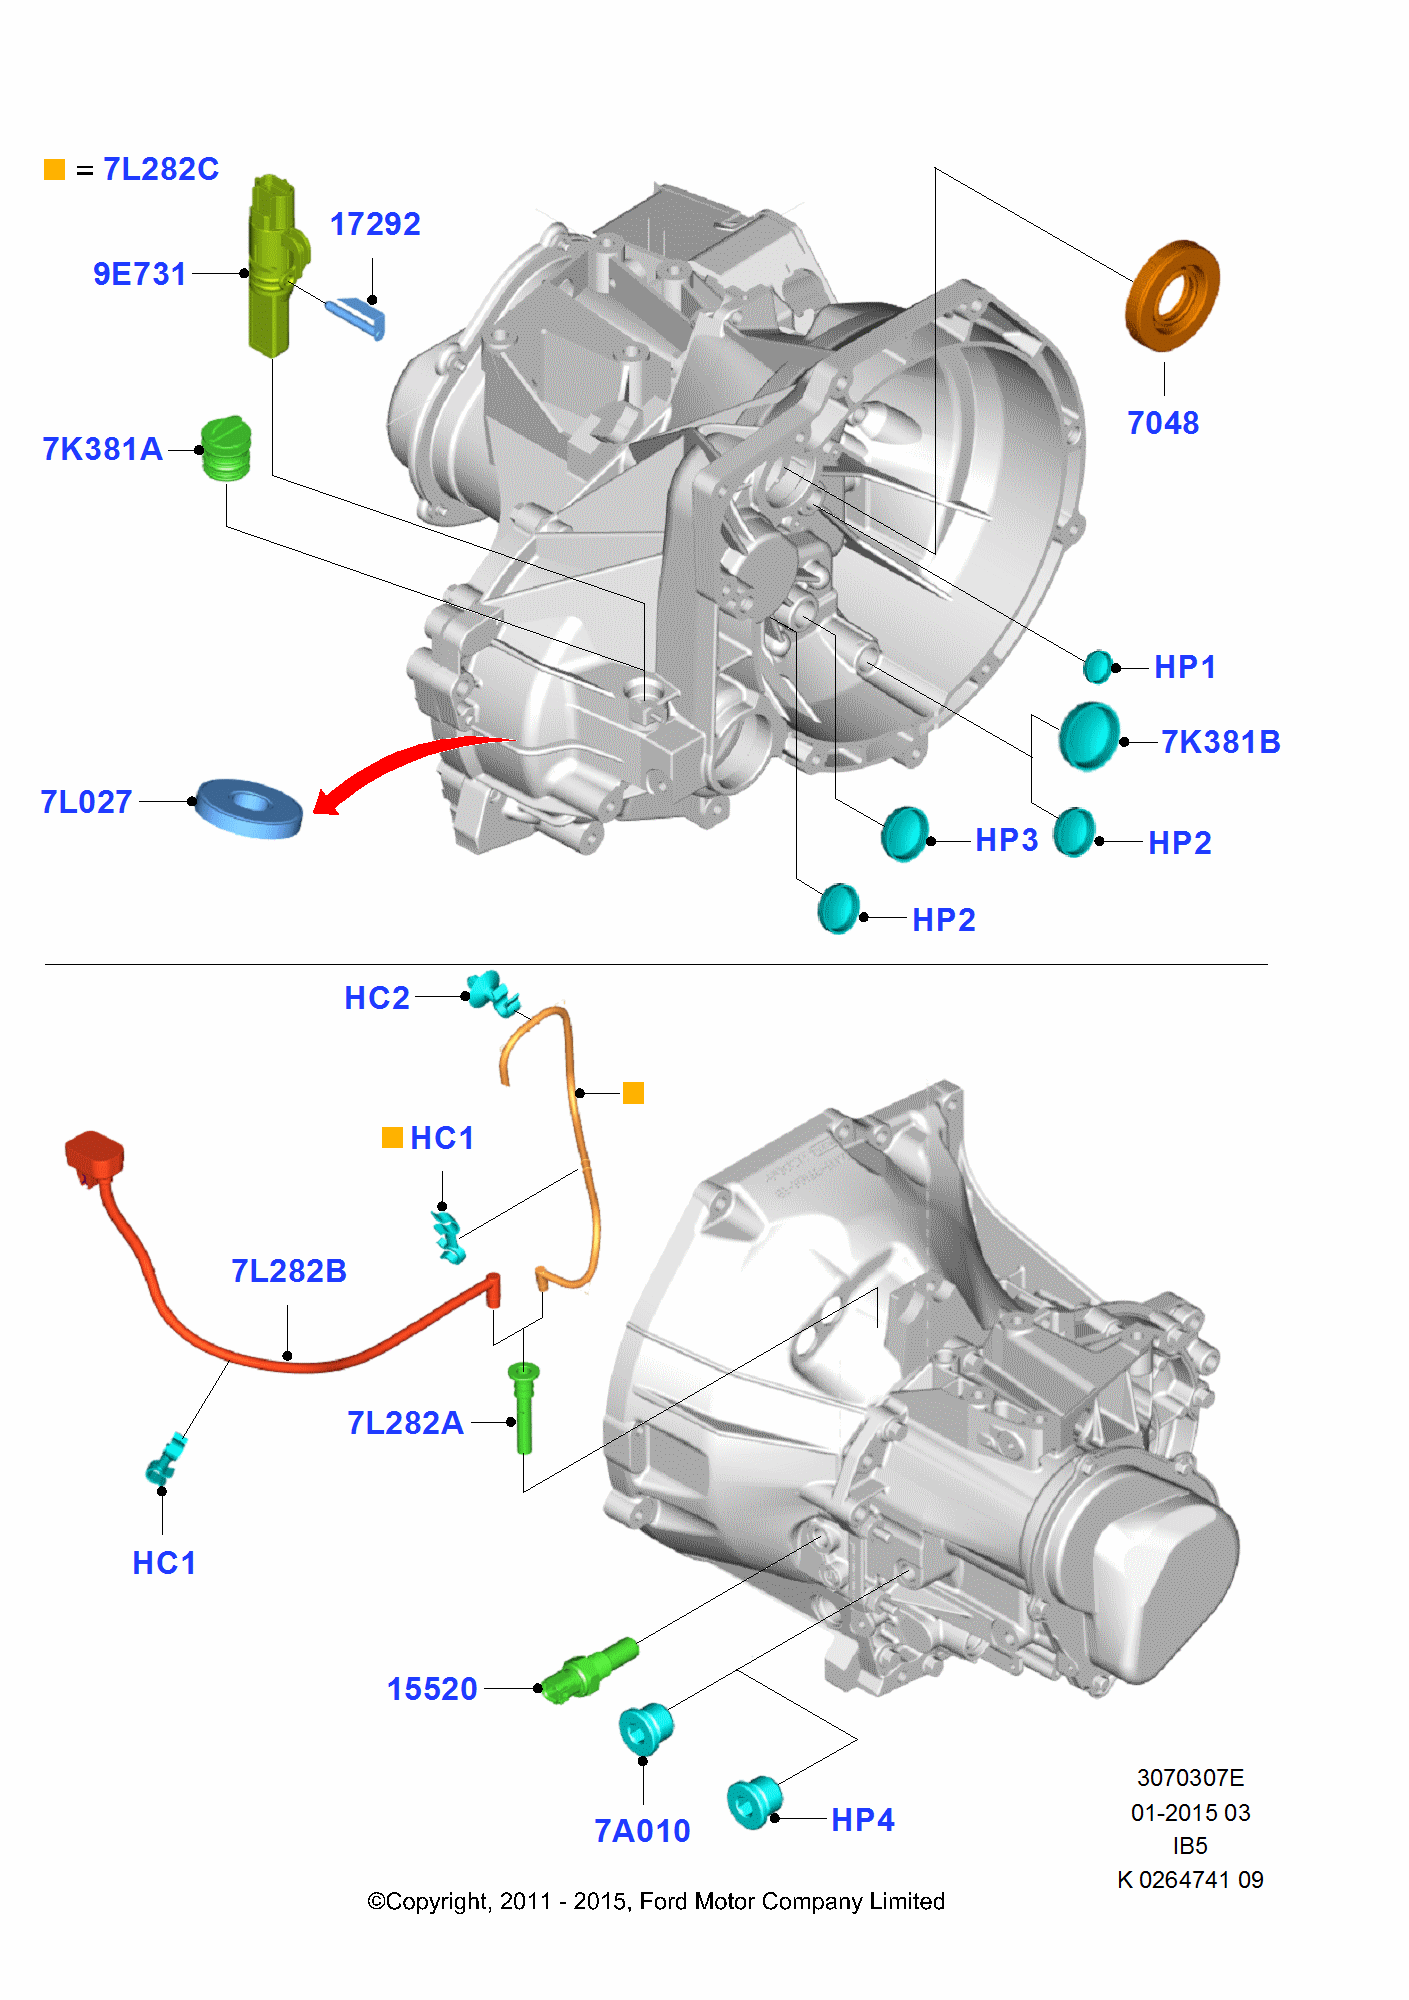 Manual Transmission External Cmpnts pro Ford Fiesta Fiesta 2008-2012        (CB1)